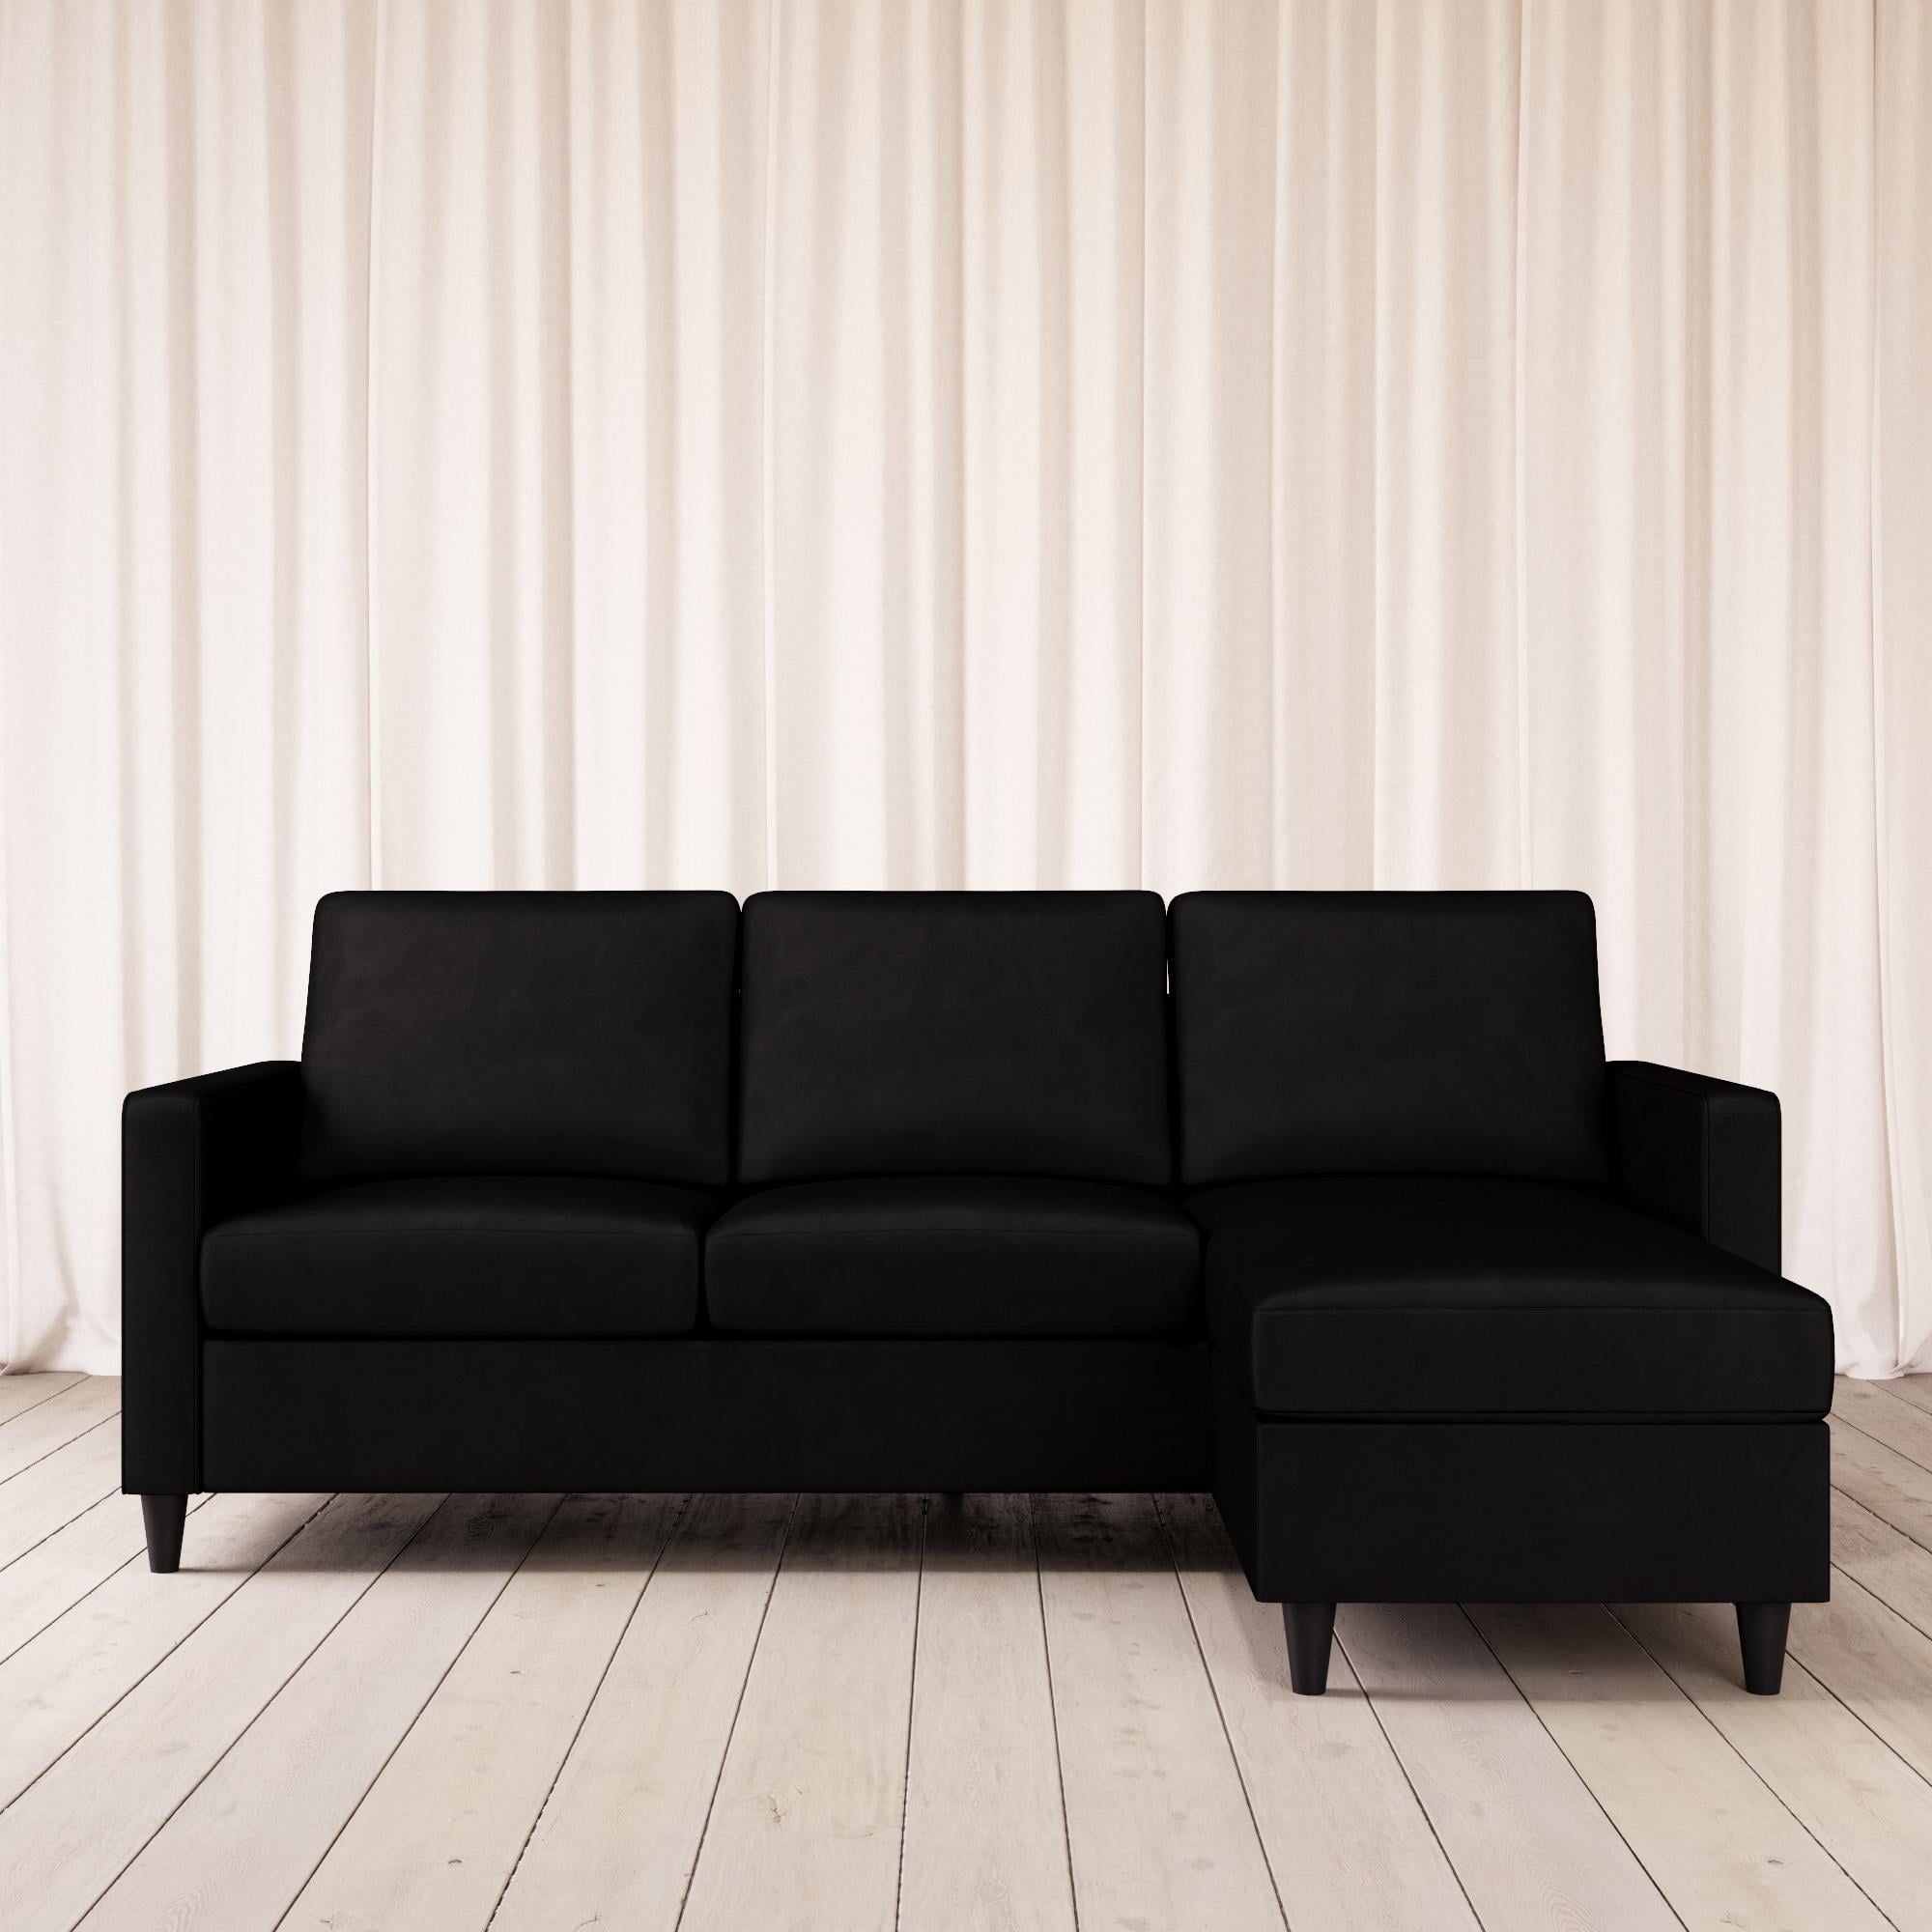 Dhp Cooper Modern Sectional Sofa, Black Velvet – Walmart – Walmart Within Black Velvet 2 Seater Sofa Beds (Gallery 11 of 20)